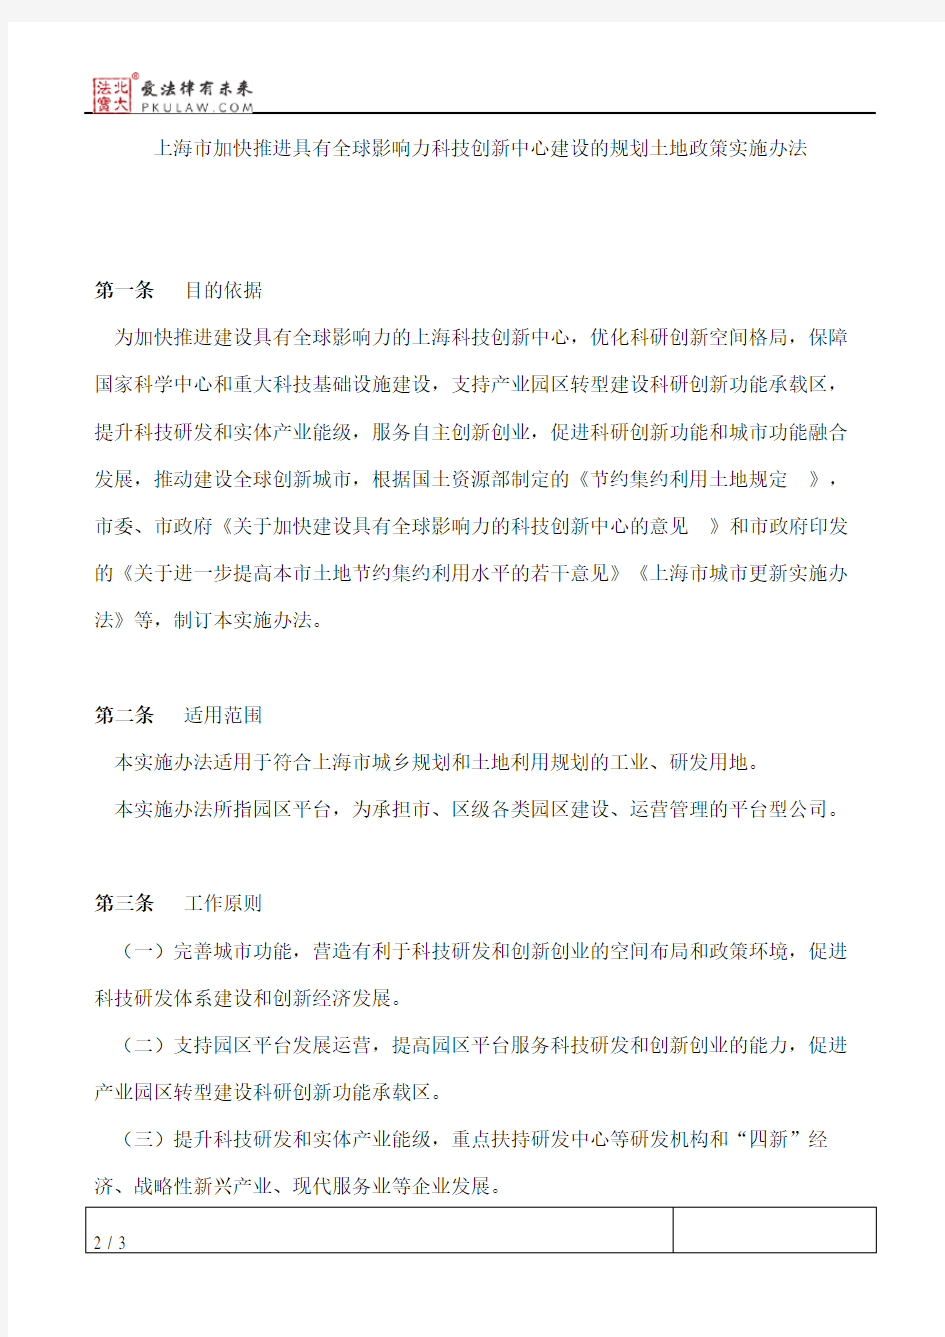 上海市人民政府办公厅关于印发《上海市加快推进具有全球影响力科